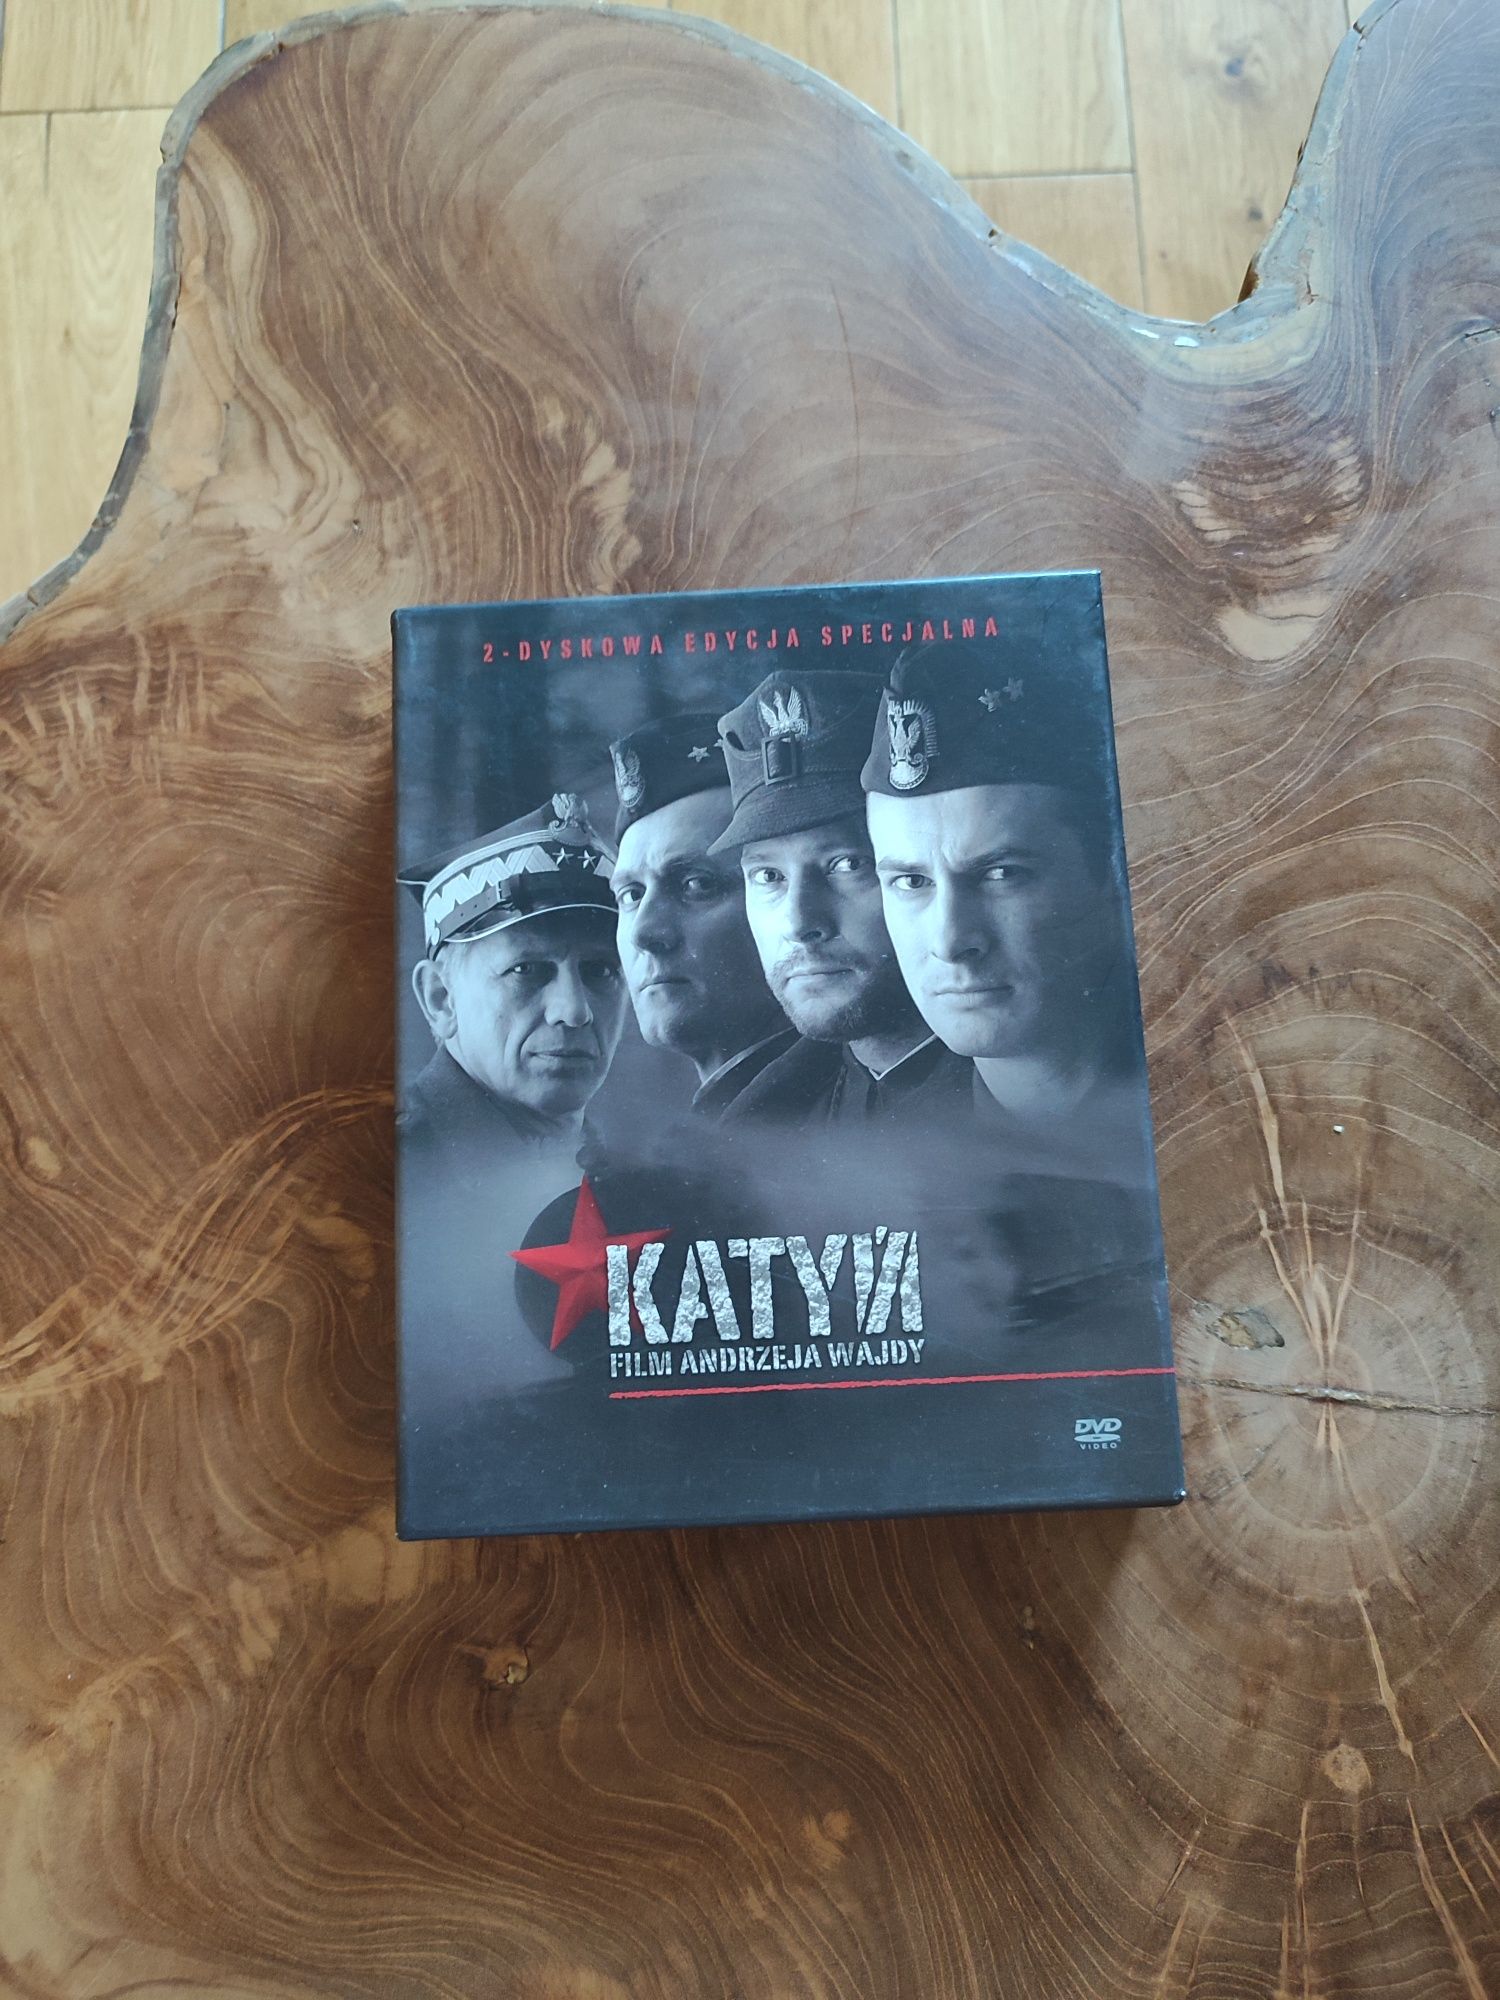 Katyń, Andrzej Wajda, 2-dyskowa edycja specjalna